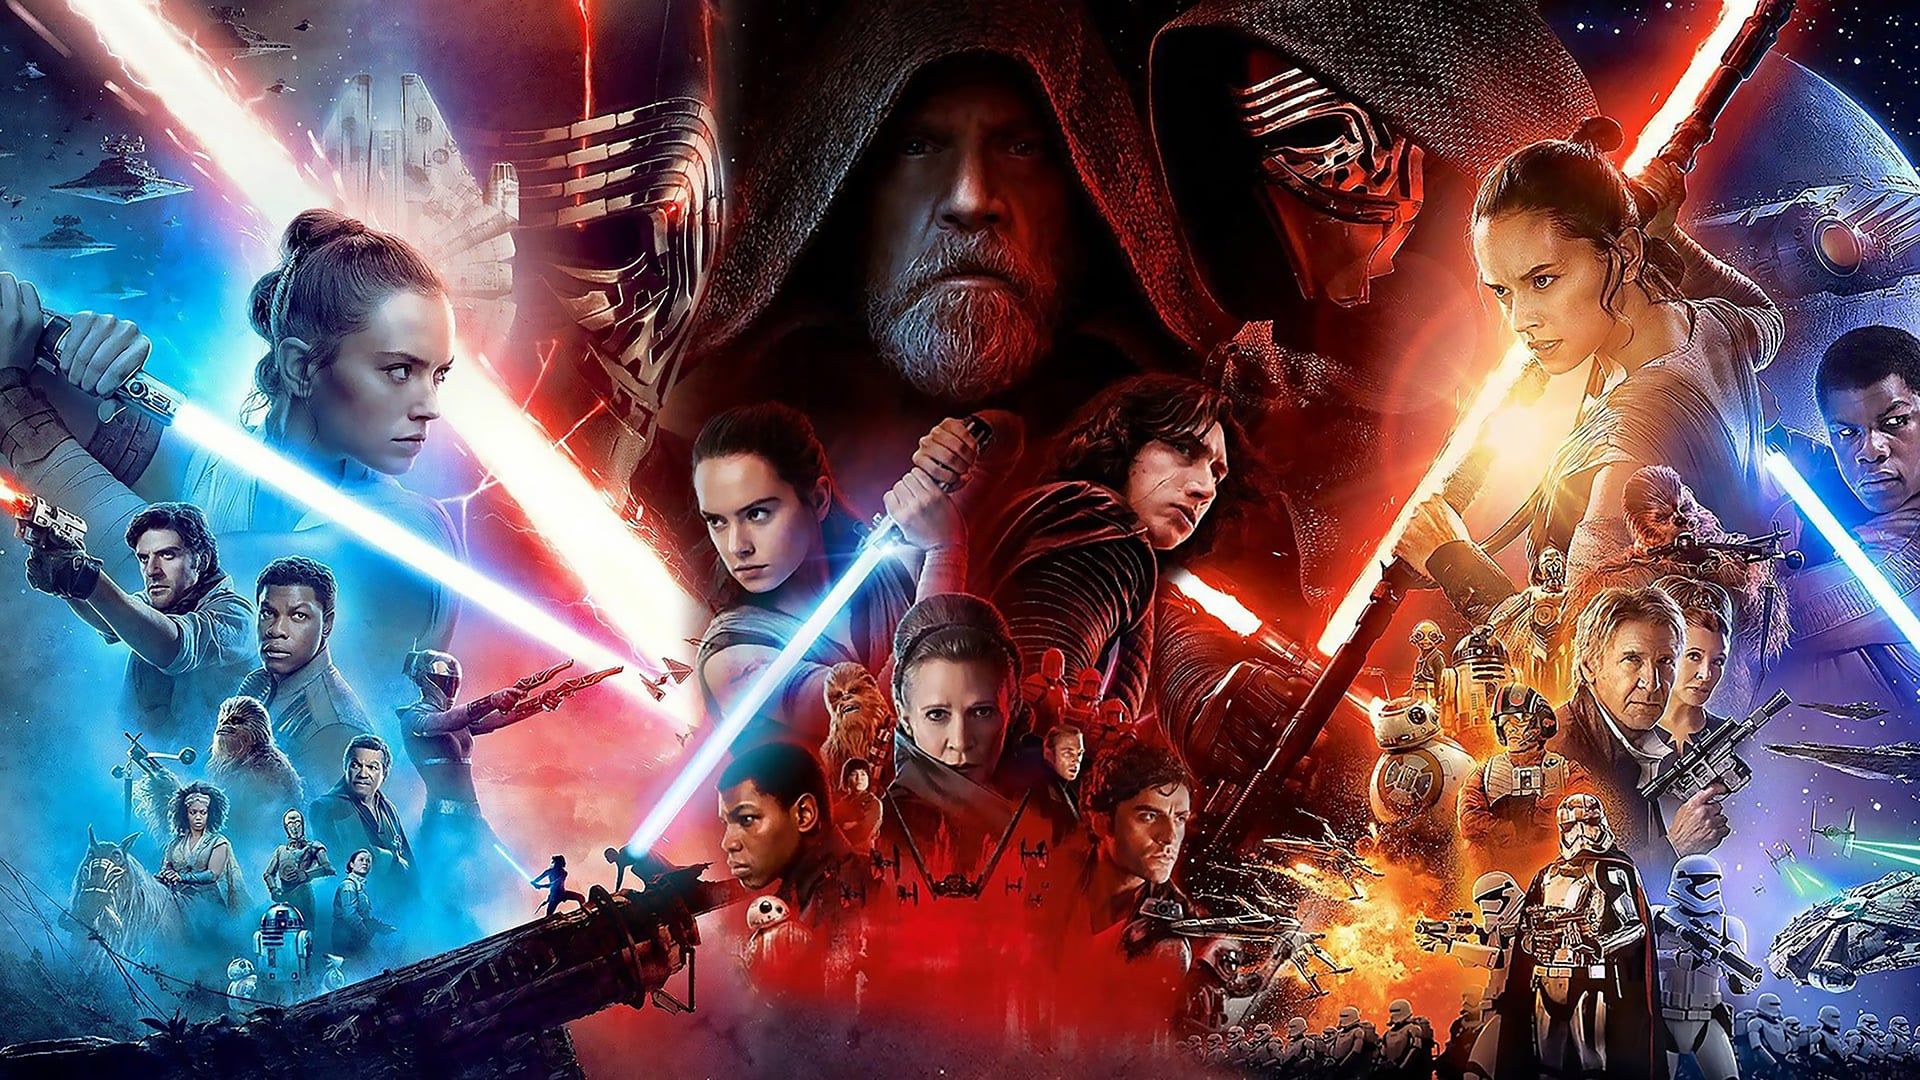 Star Wars: The Last Jedi - Box Office